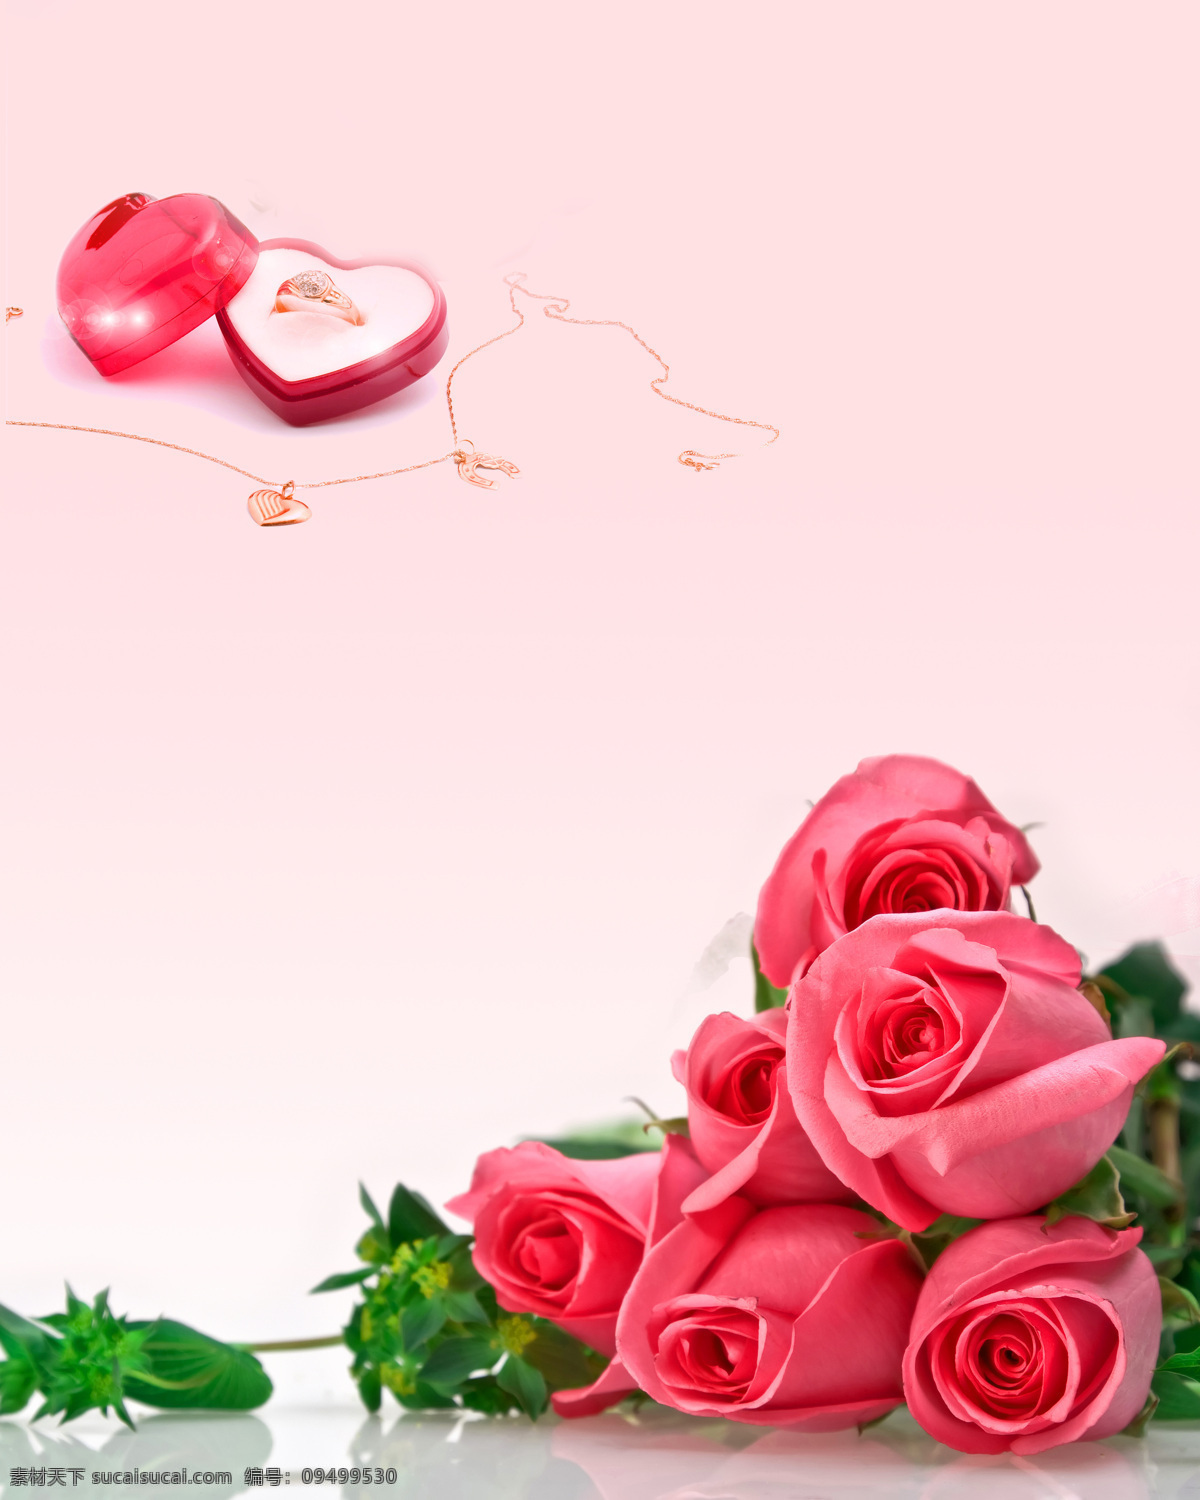 唯一的爱 室内 移门 创意 画 家装模型 模型素材 移门画 玫瑰花朵 戒指 项链 效果图